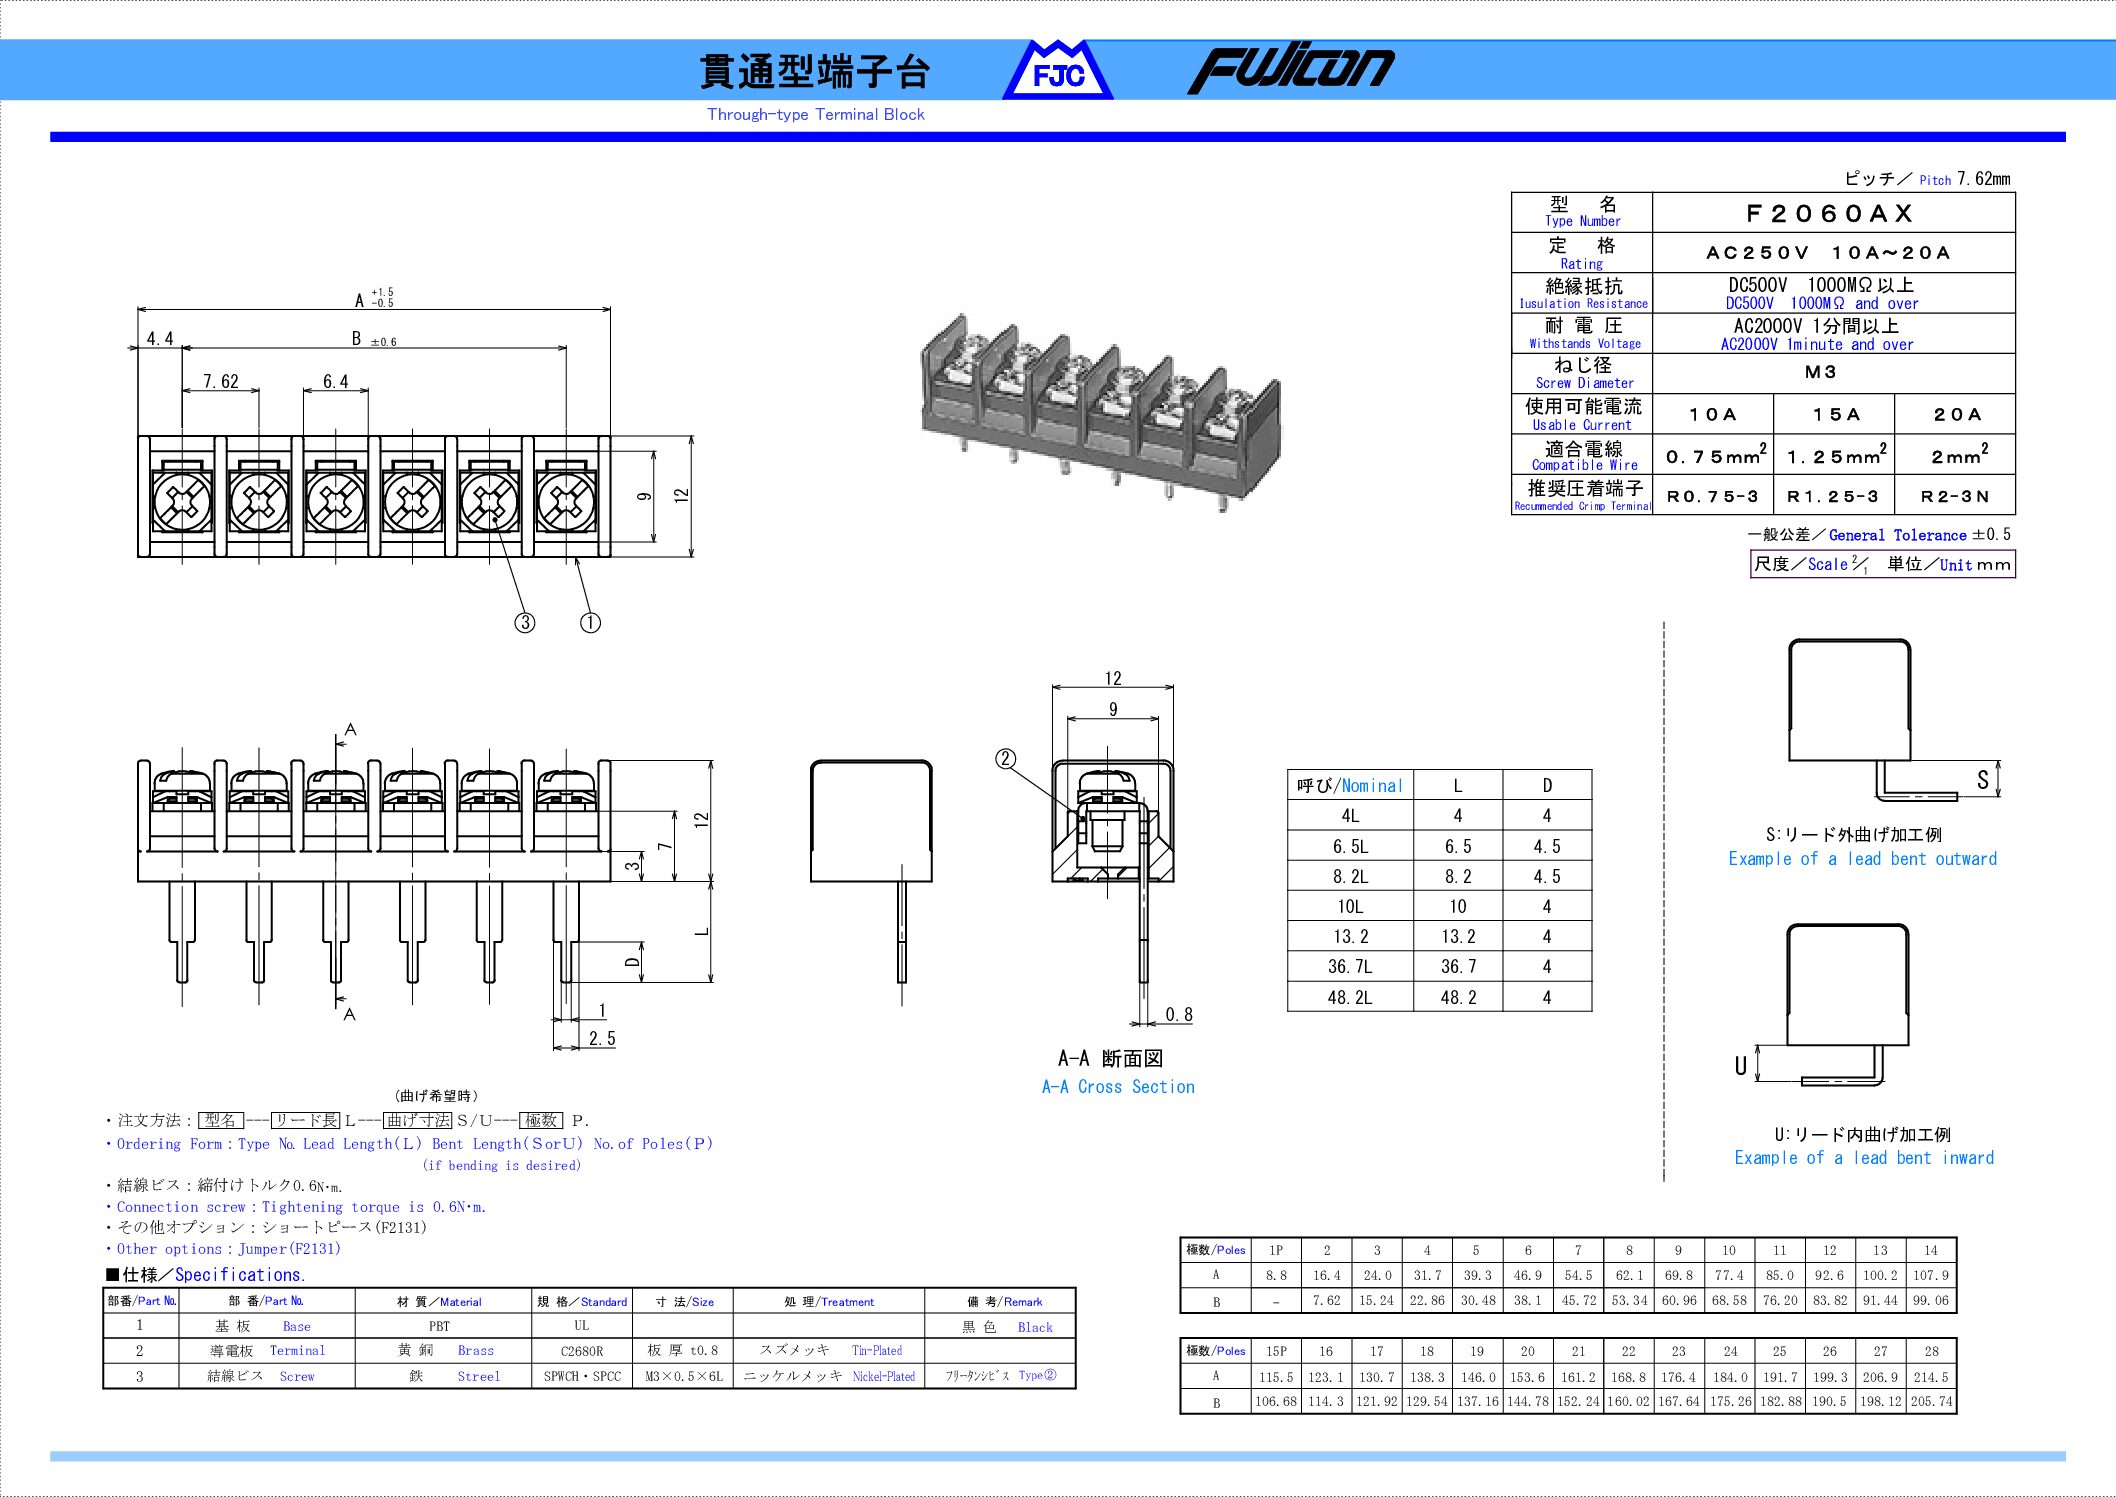 日本初の ロブテックス NSD425M ナット Dタイプ スティール 4-2.5 1000個入 エビ LOBSTER ロブスター エビ印工具  LOBTEX